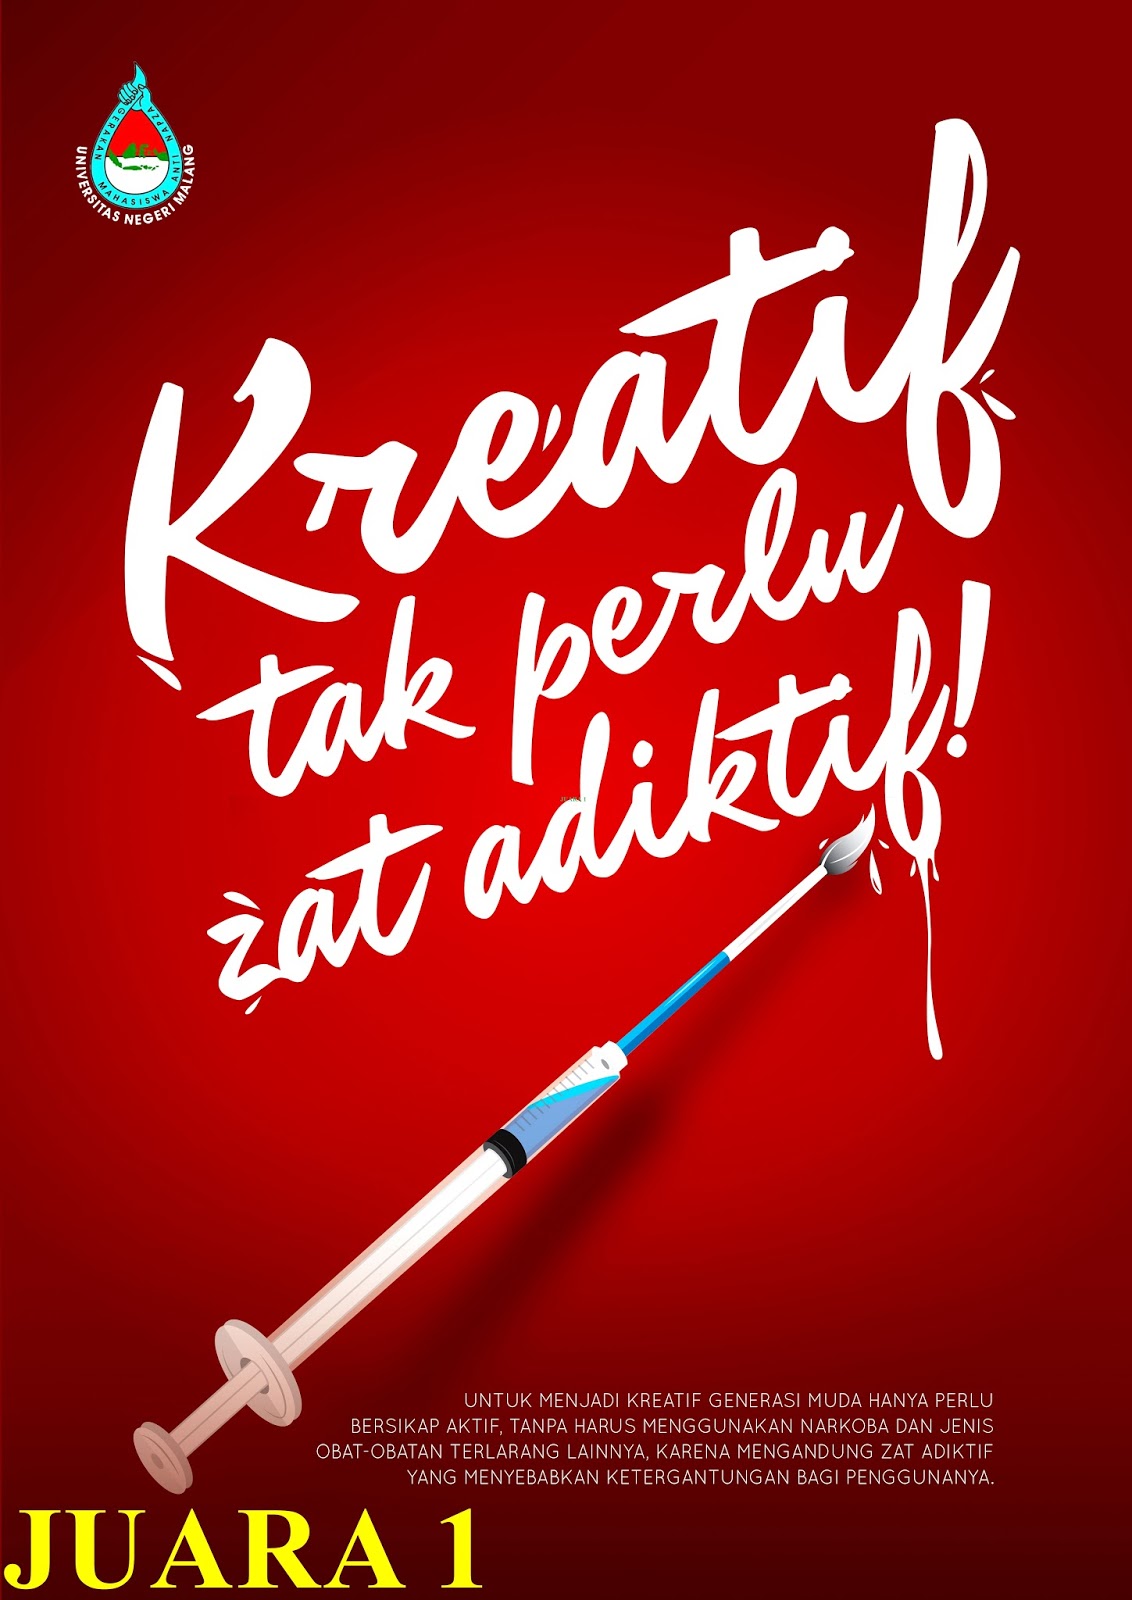 Contoh gambar poster dan slogan tentang narkoba